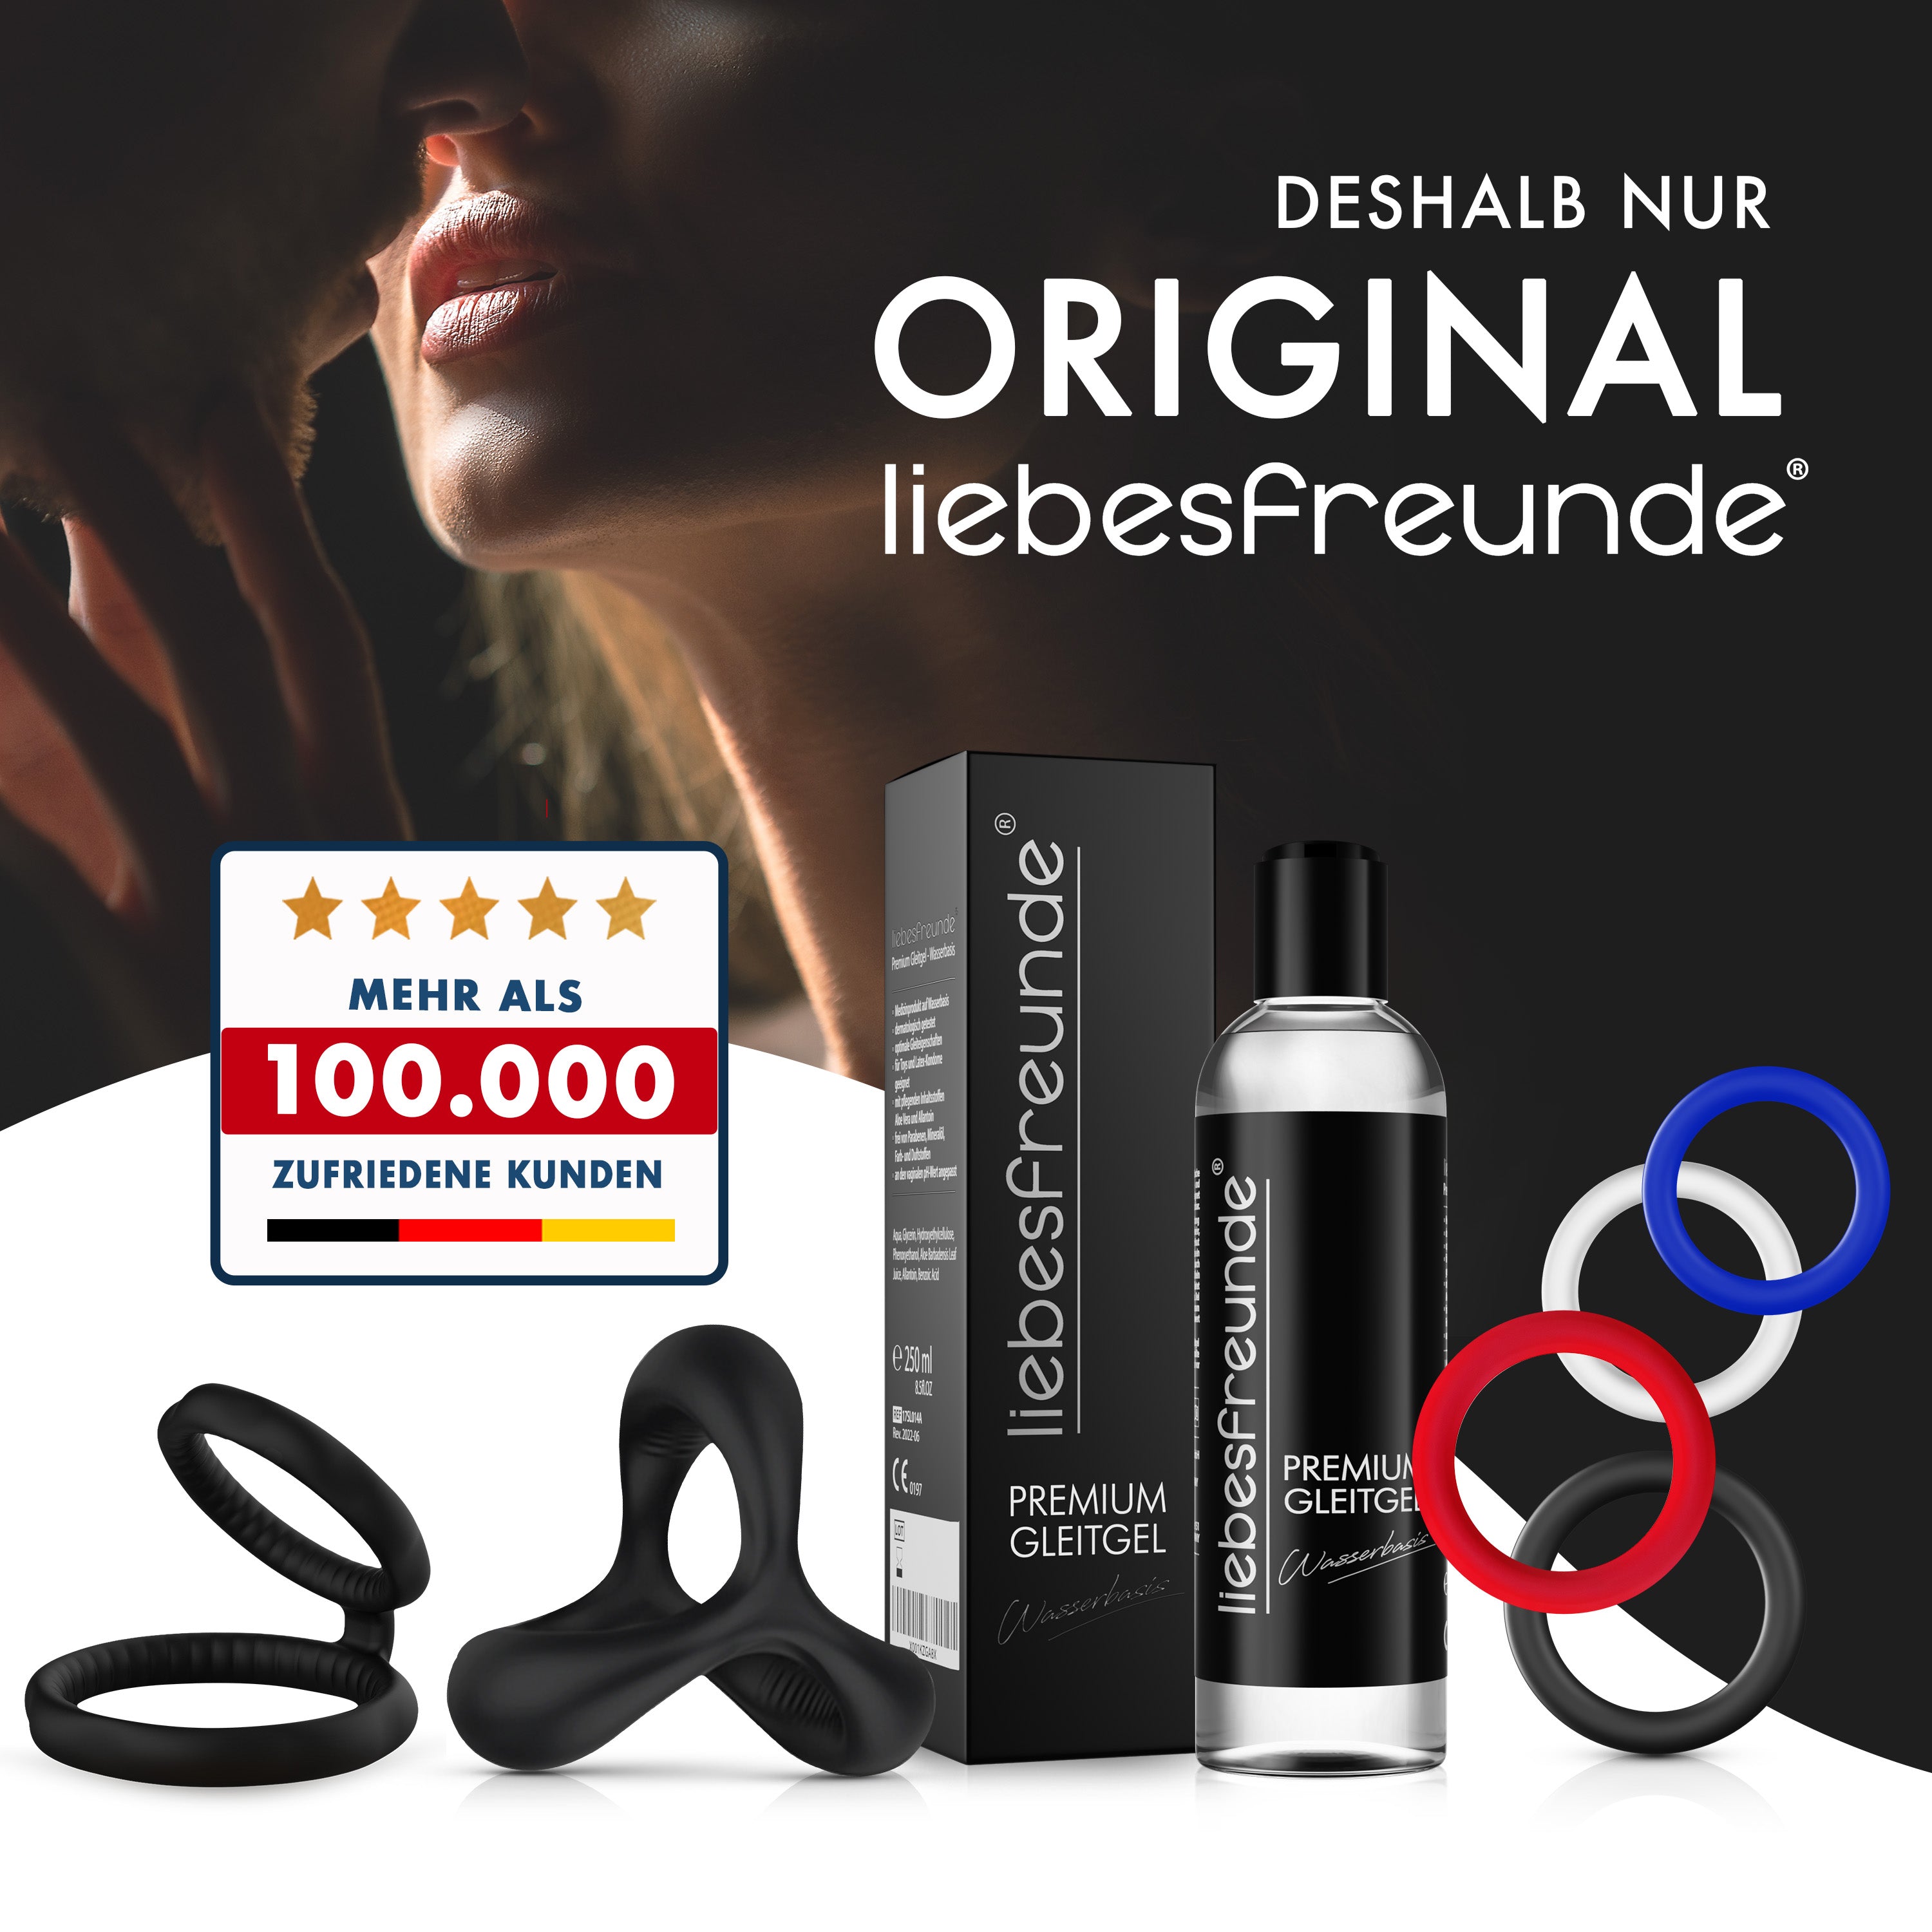 liebesfreunde® Penisring Set - Cockring Sexspielzeug für Paare zur Potenzsteigerung (schwarz)